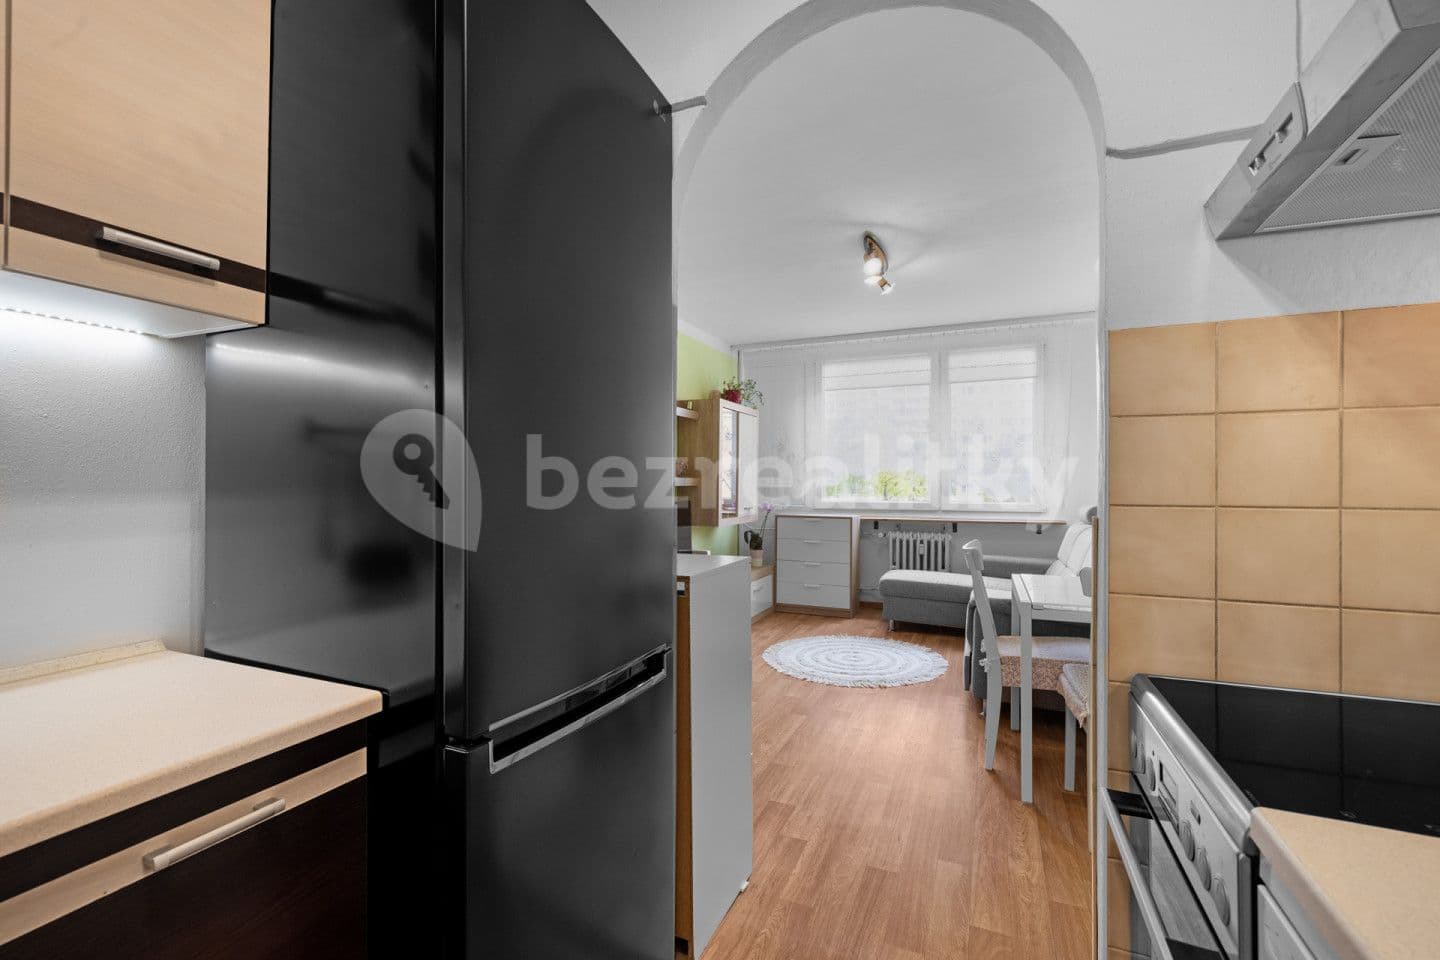 1 bedroom with open-plan kitchen flat for sale, 38 m², Holandská, Kladno, Středočeský Region